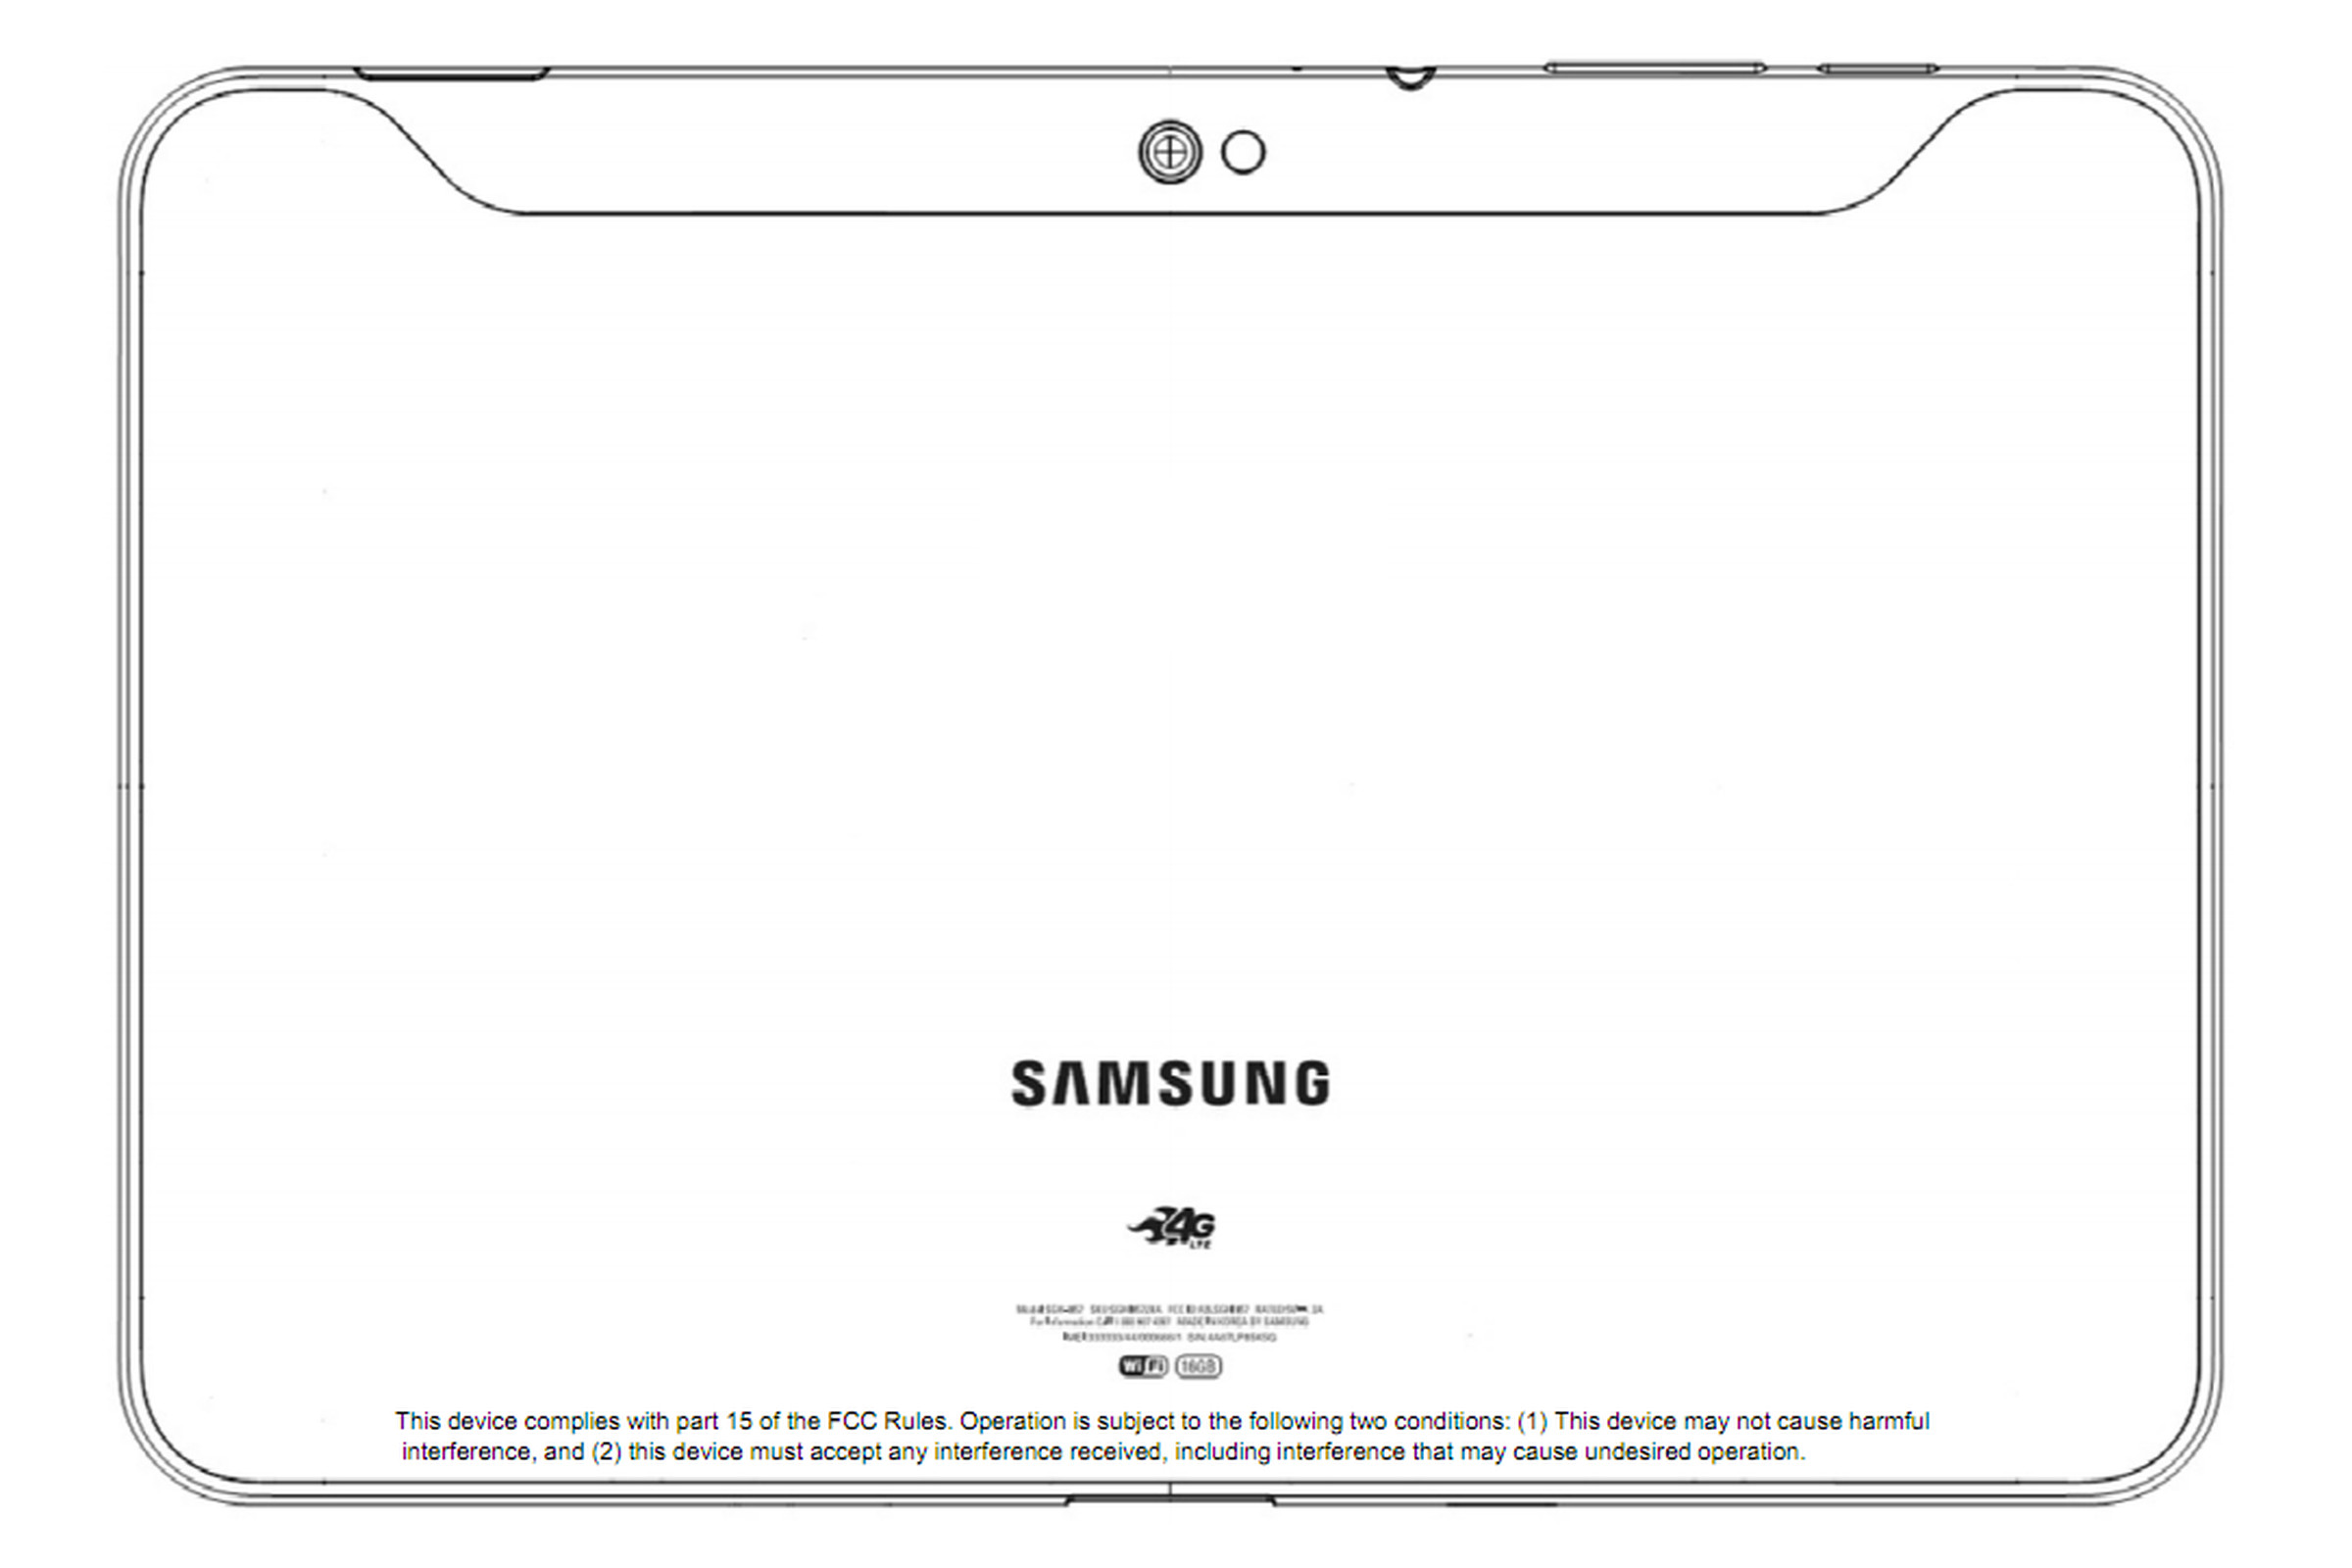 Samsung Galaxy Tab 10.1 FCC